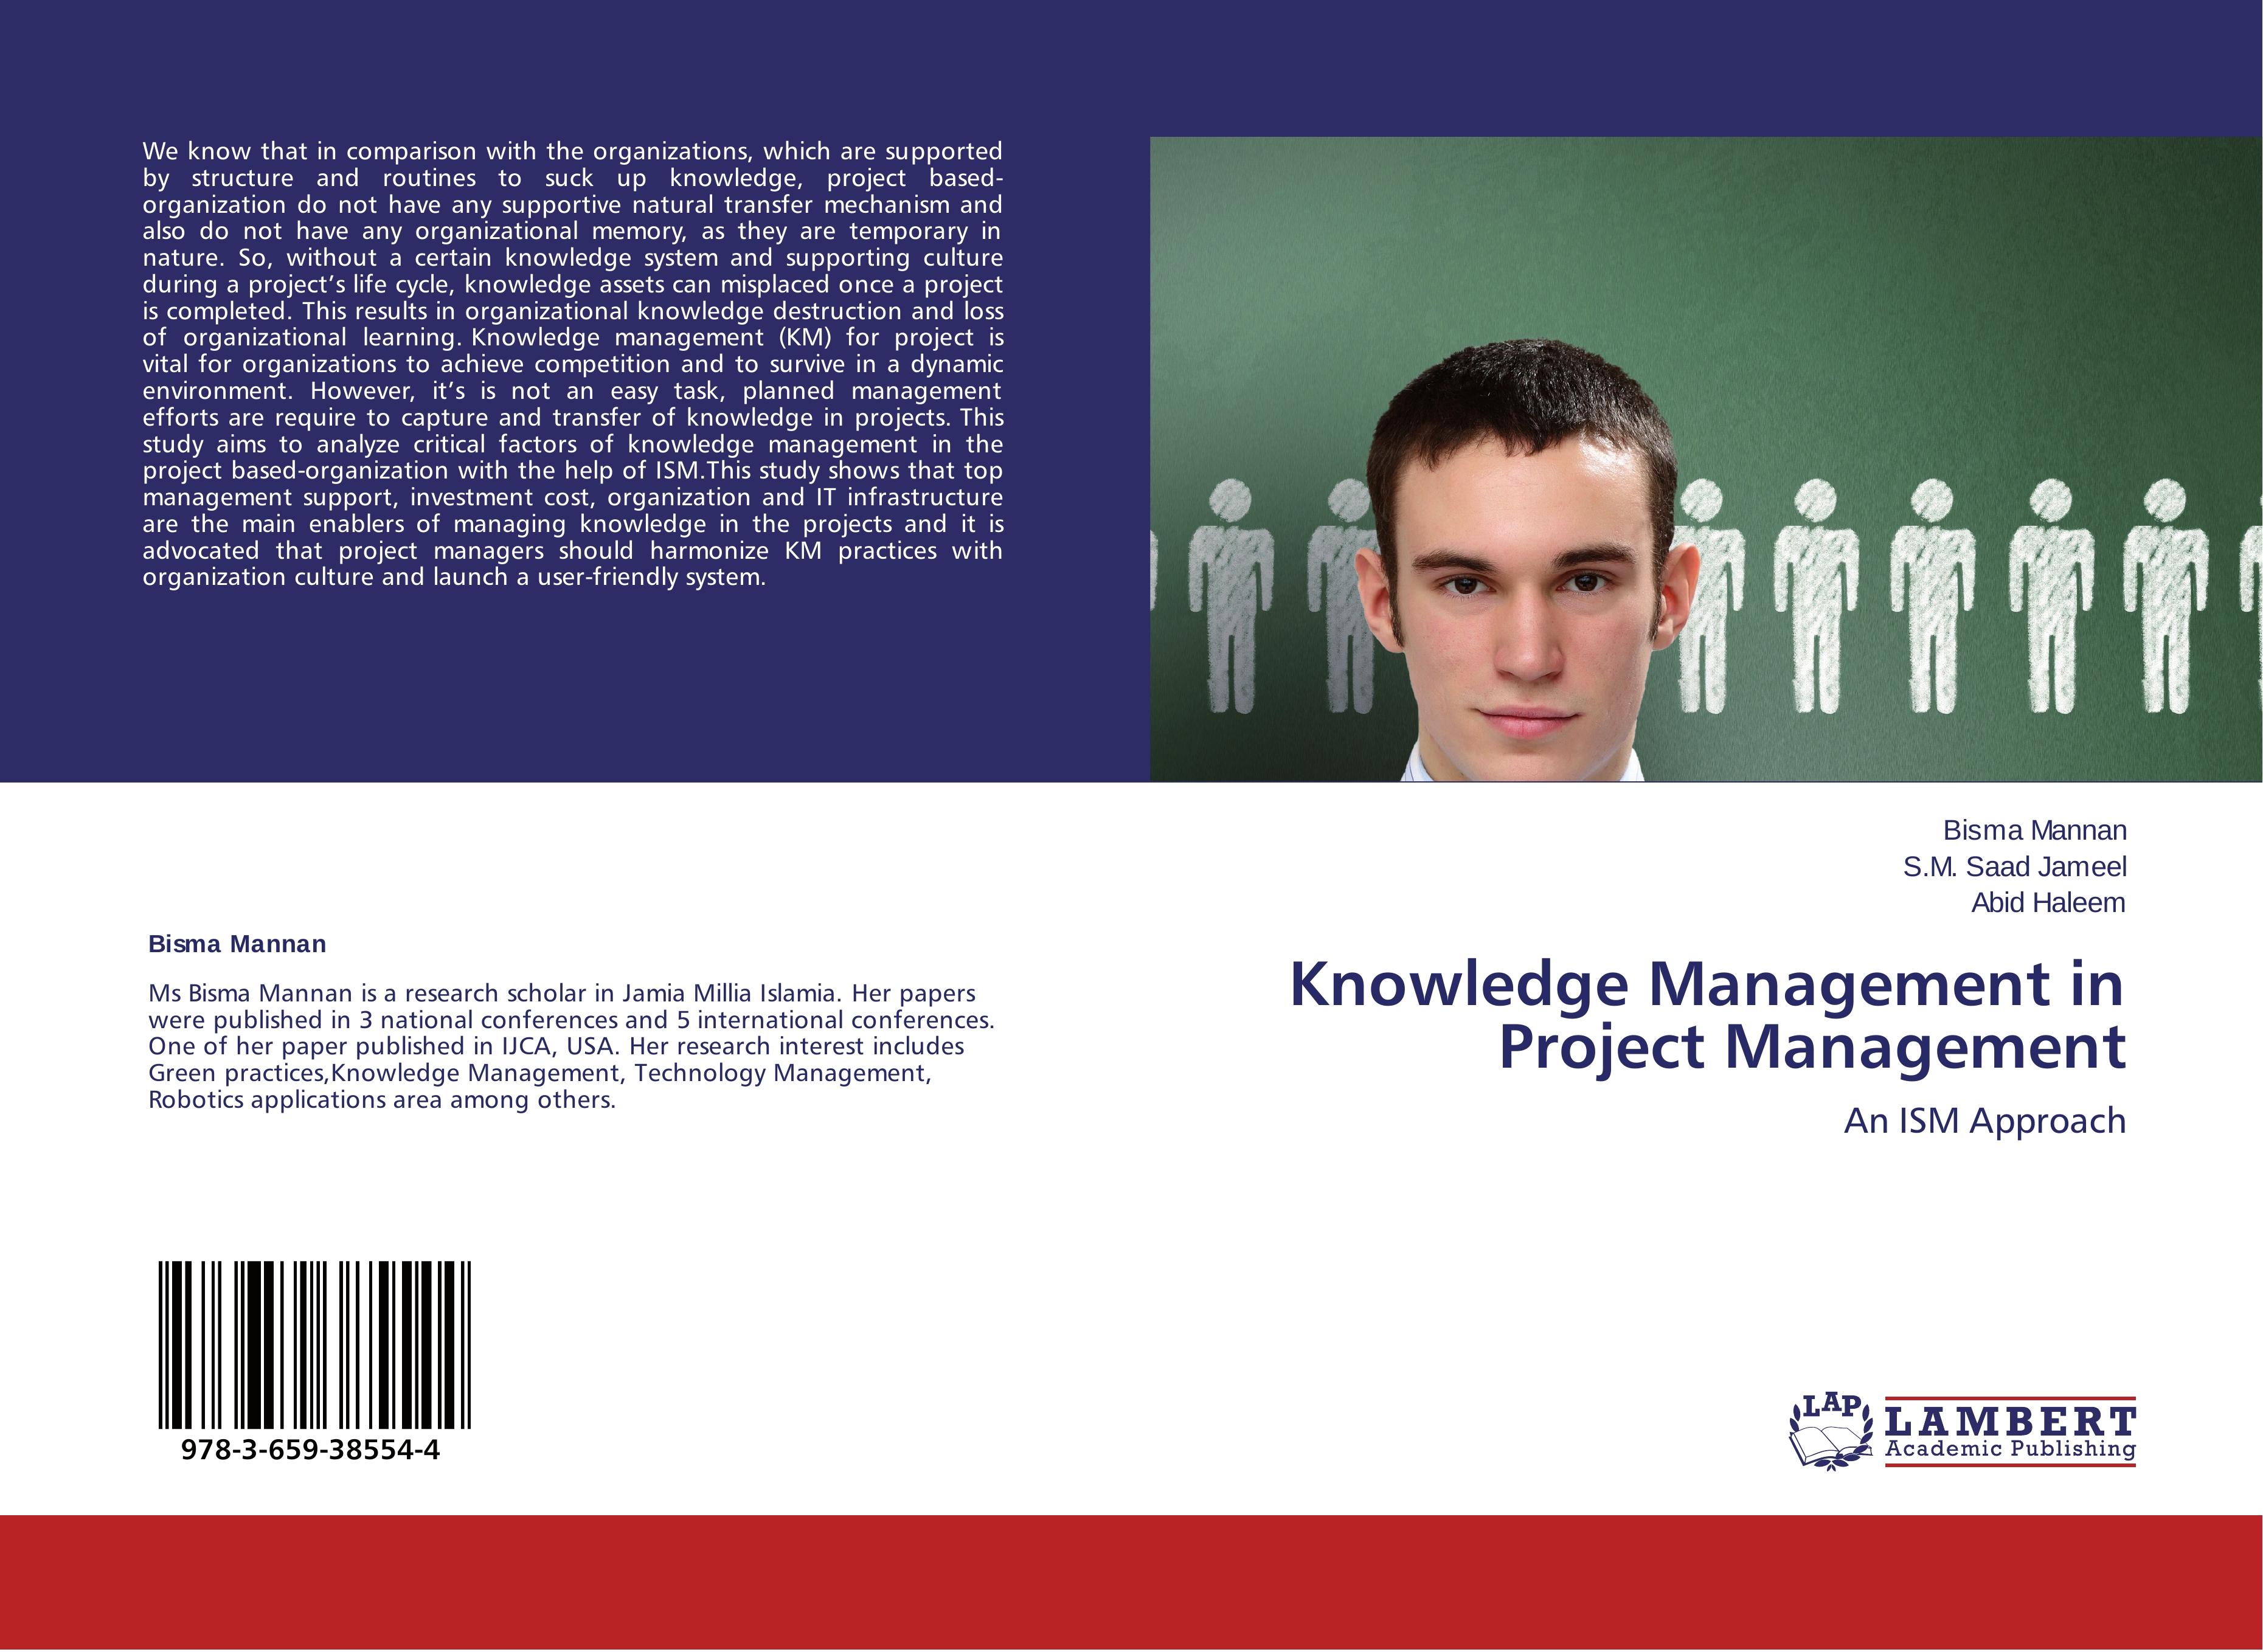 Knowledge Management in Project Management - Bisma Mannan S.M. Saad Jameel Abid Haleem